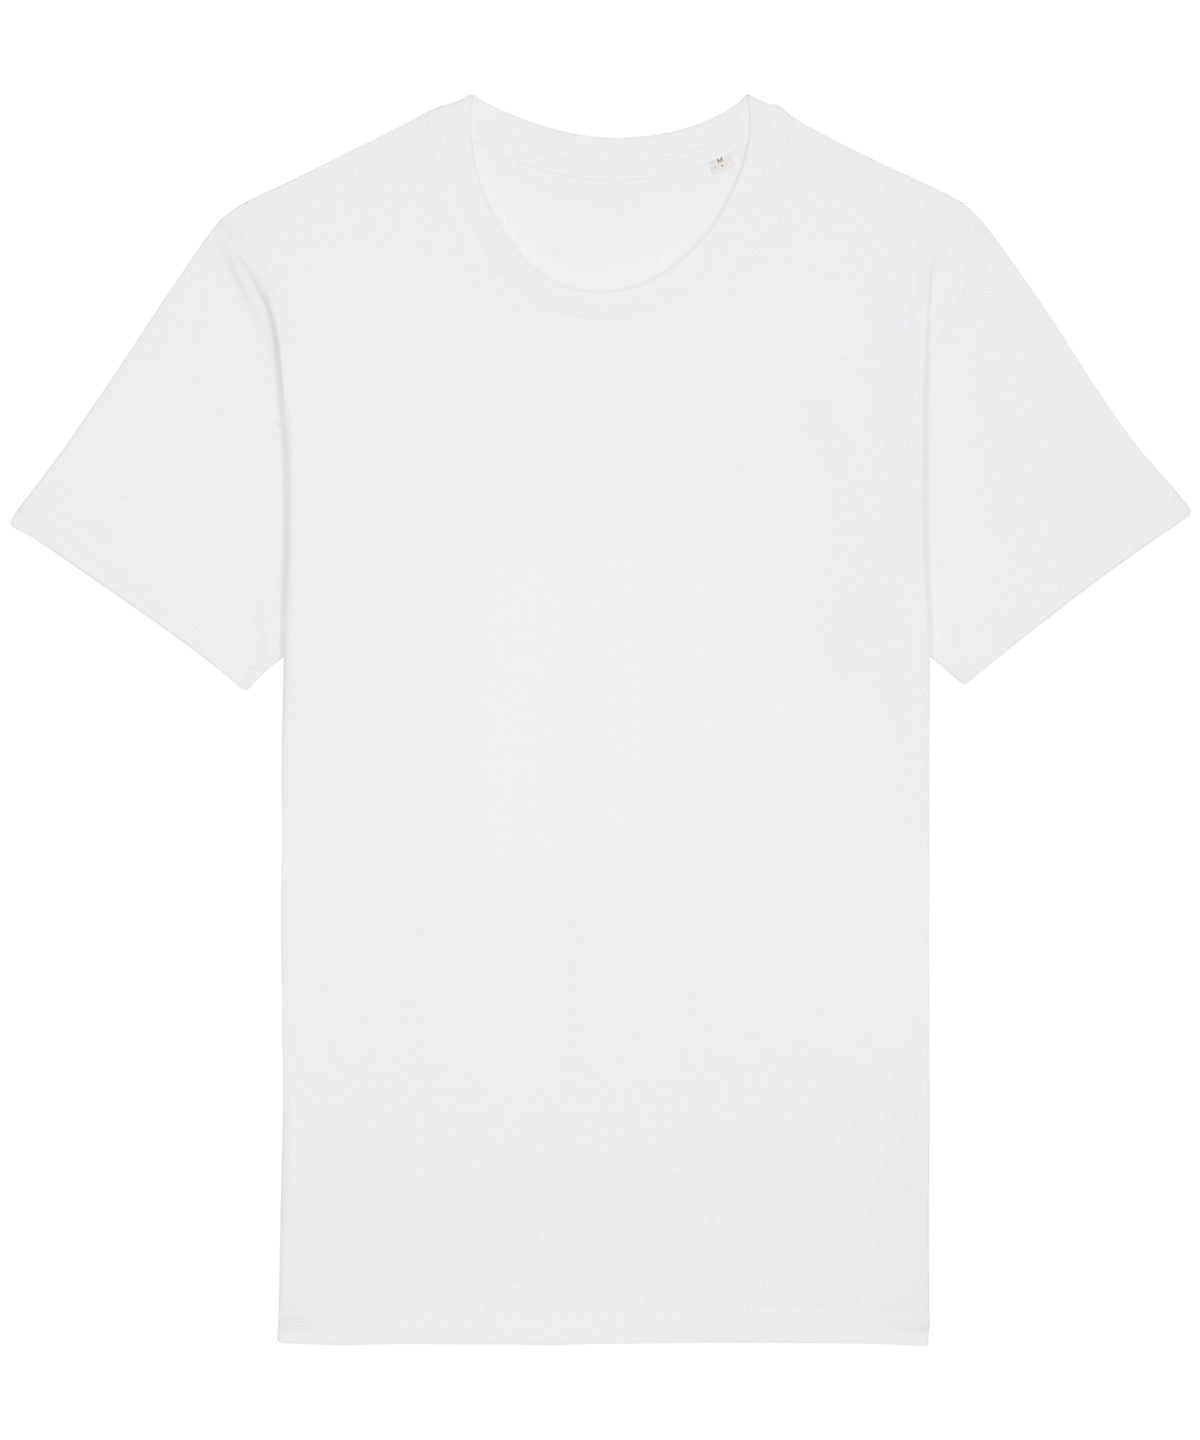 Stanley/Stella Rocker The Essential Unisex T-Shirt  White